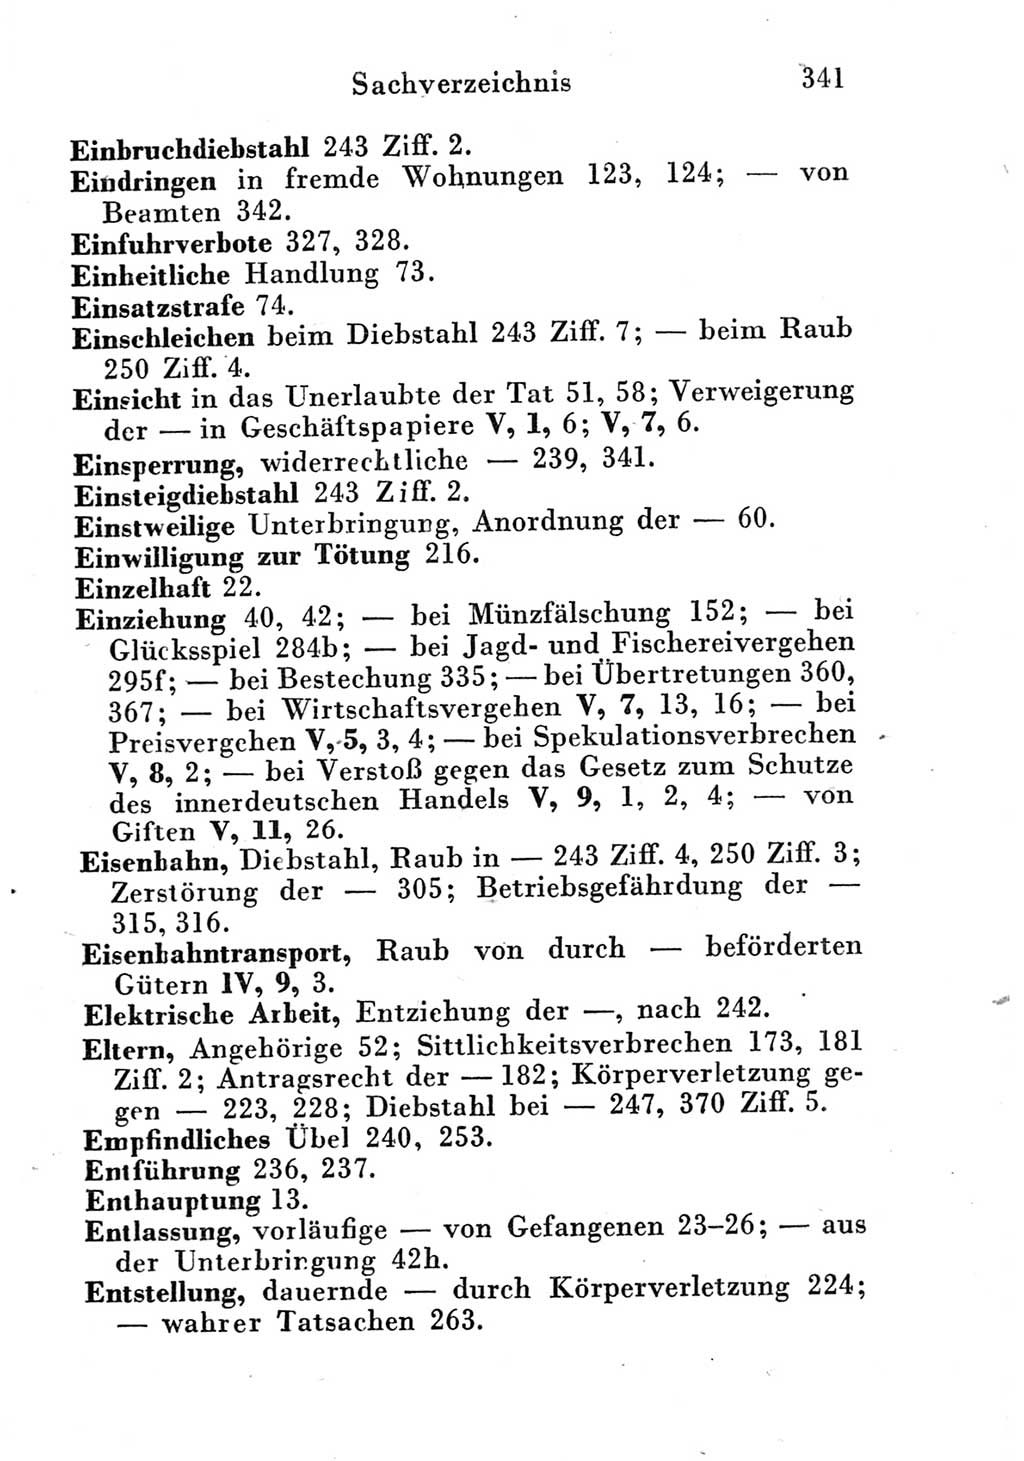 Strafgesetzbuch (StGB) und andere Strafgesetze [Deutsche Demokratische Republik (DDR)] 1951, Seite 341 (StGB Strafges. DDR 1951, S. 341)